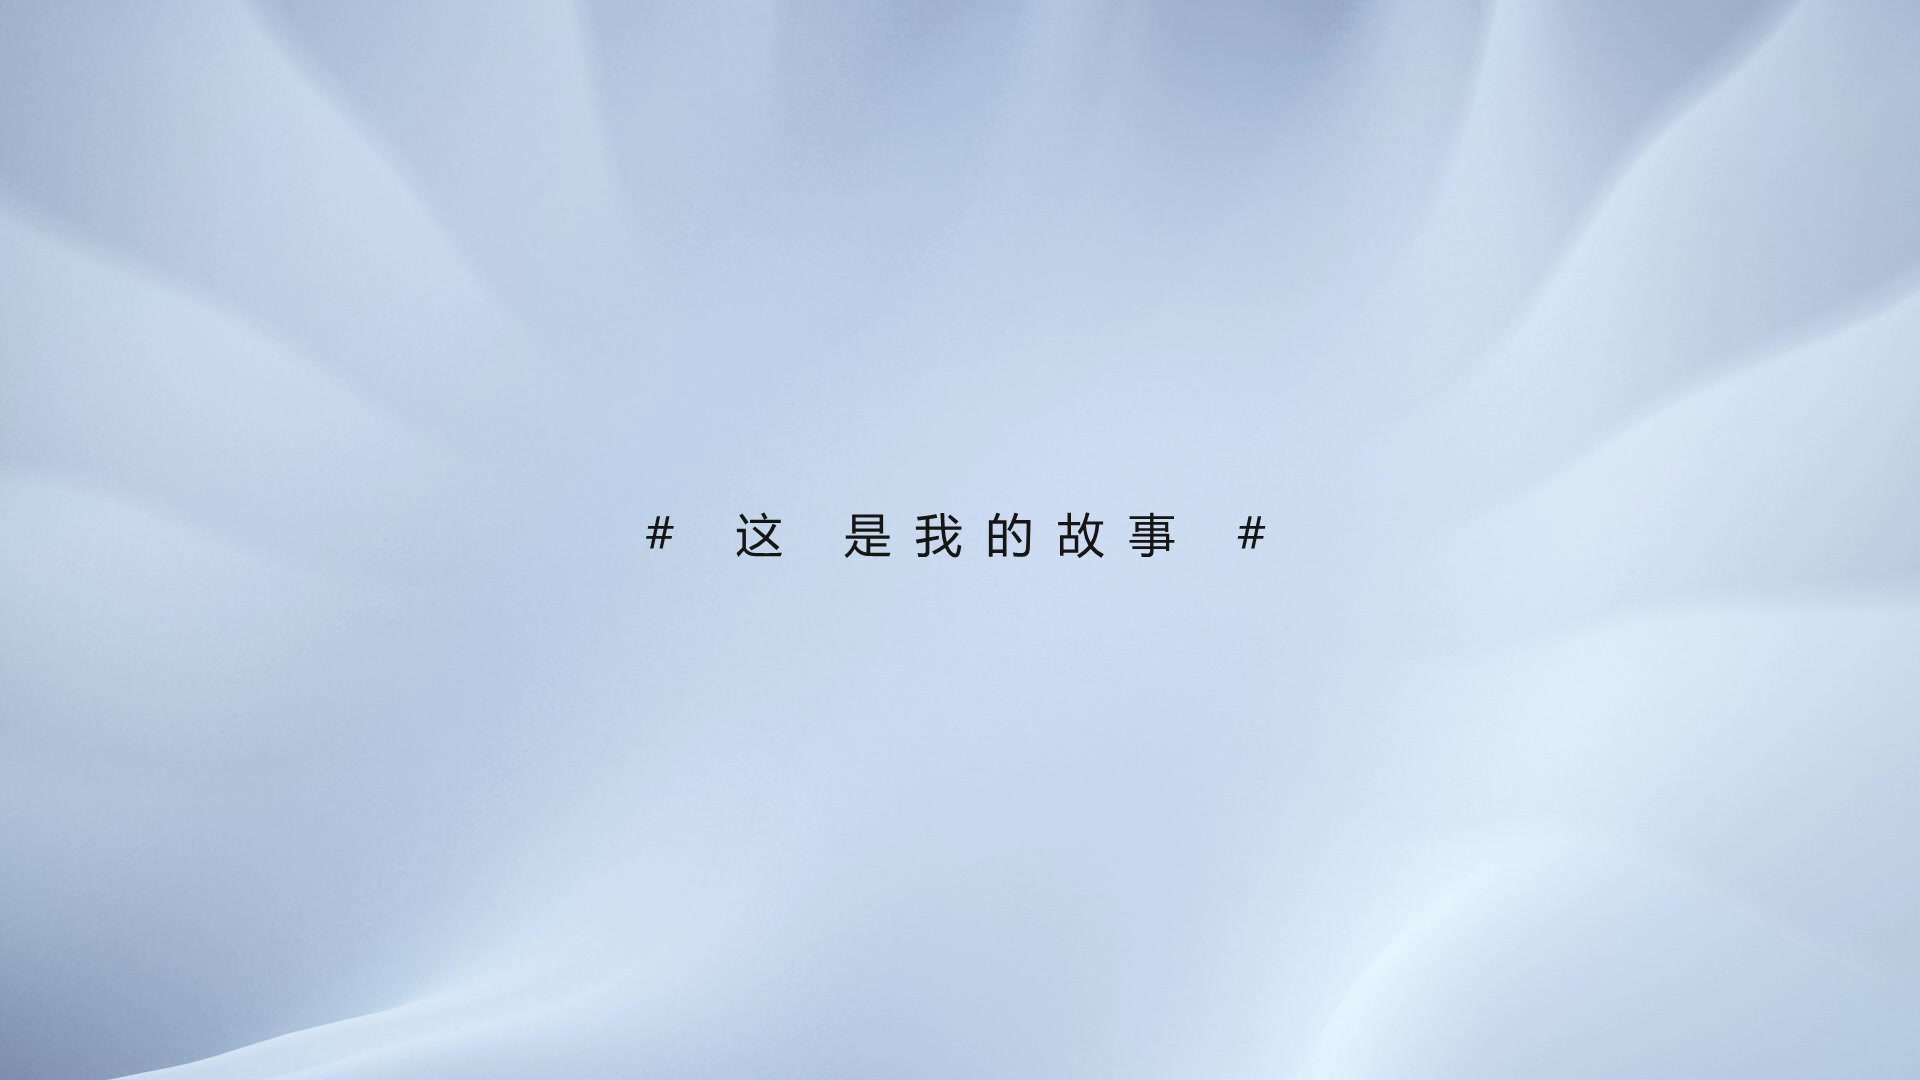 徐州紫金财产保险股份有限公司采访宣传片